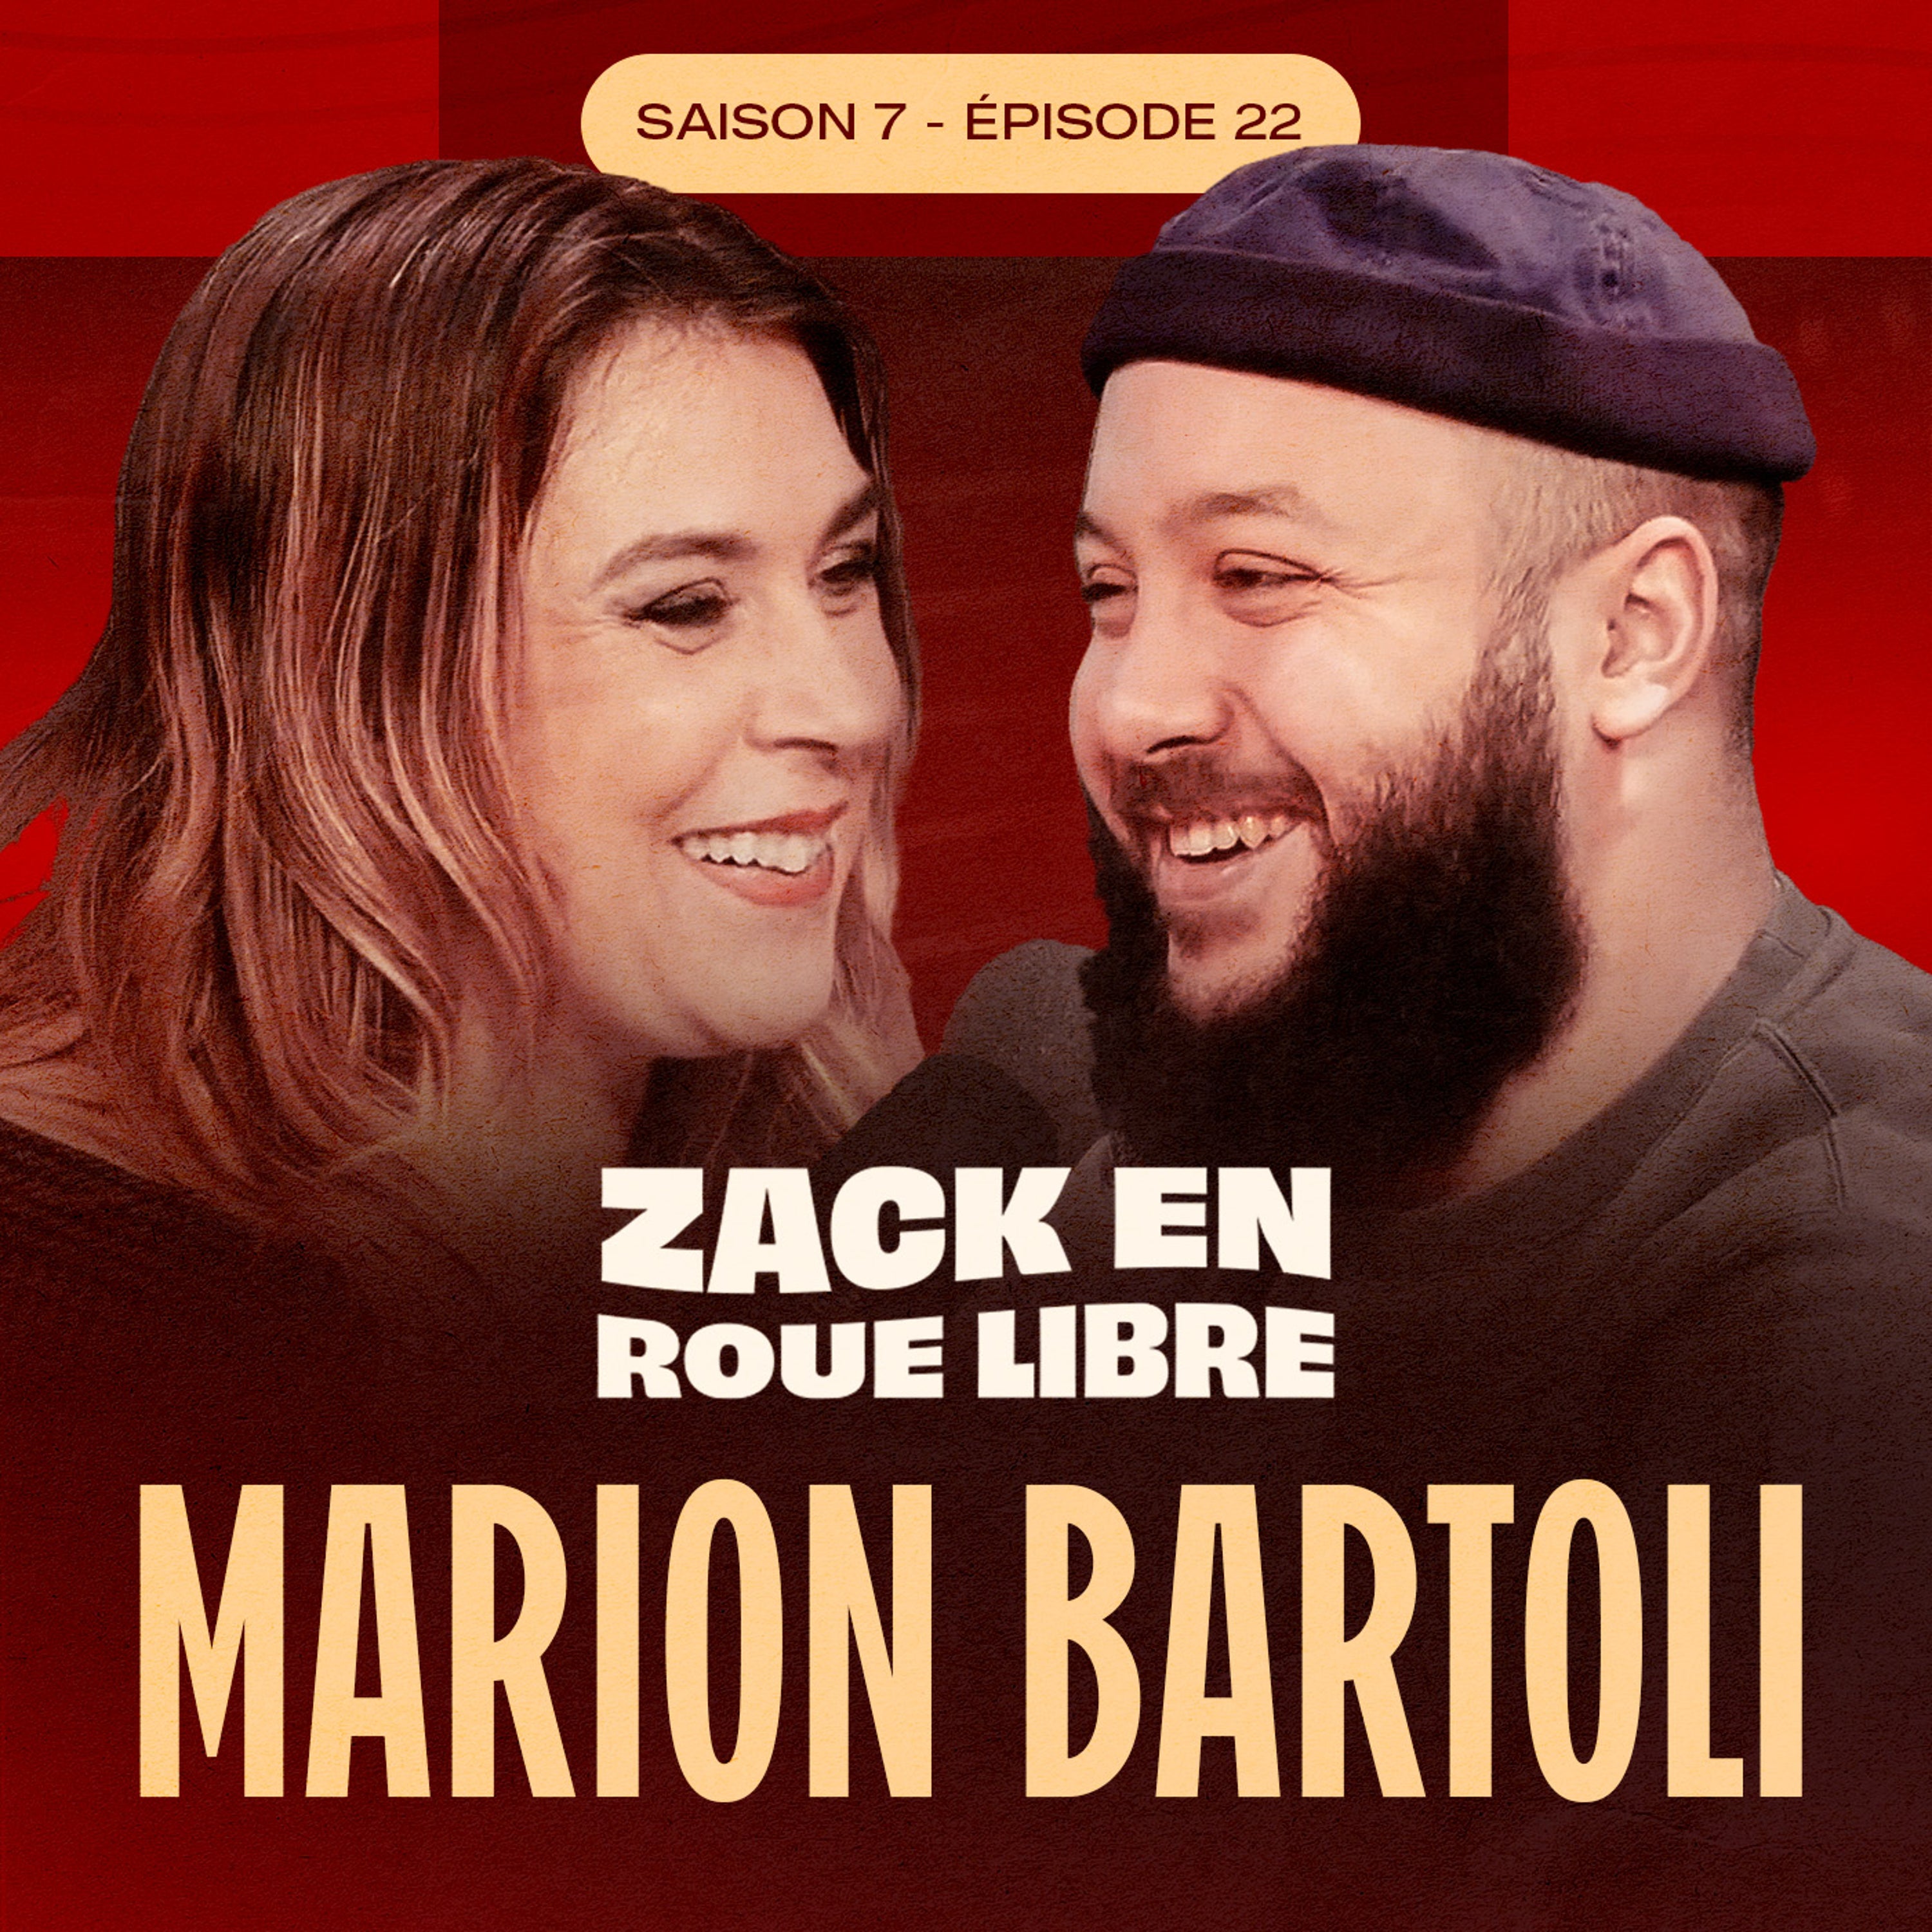 Marion Bartoli, Dans la Légende du Tennis Français - Zack en Roue Libre avec Marion Bartoli